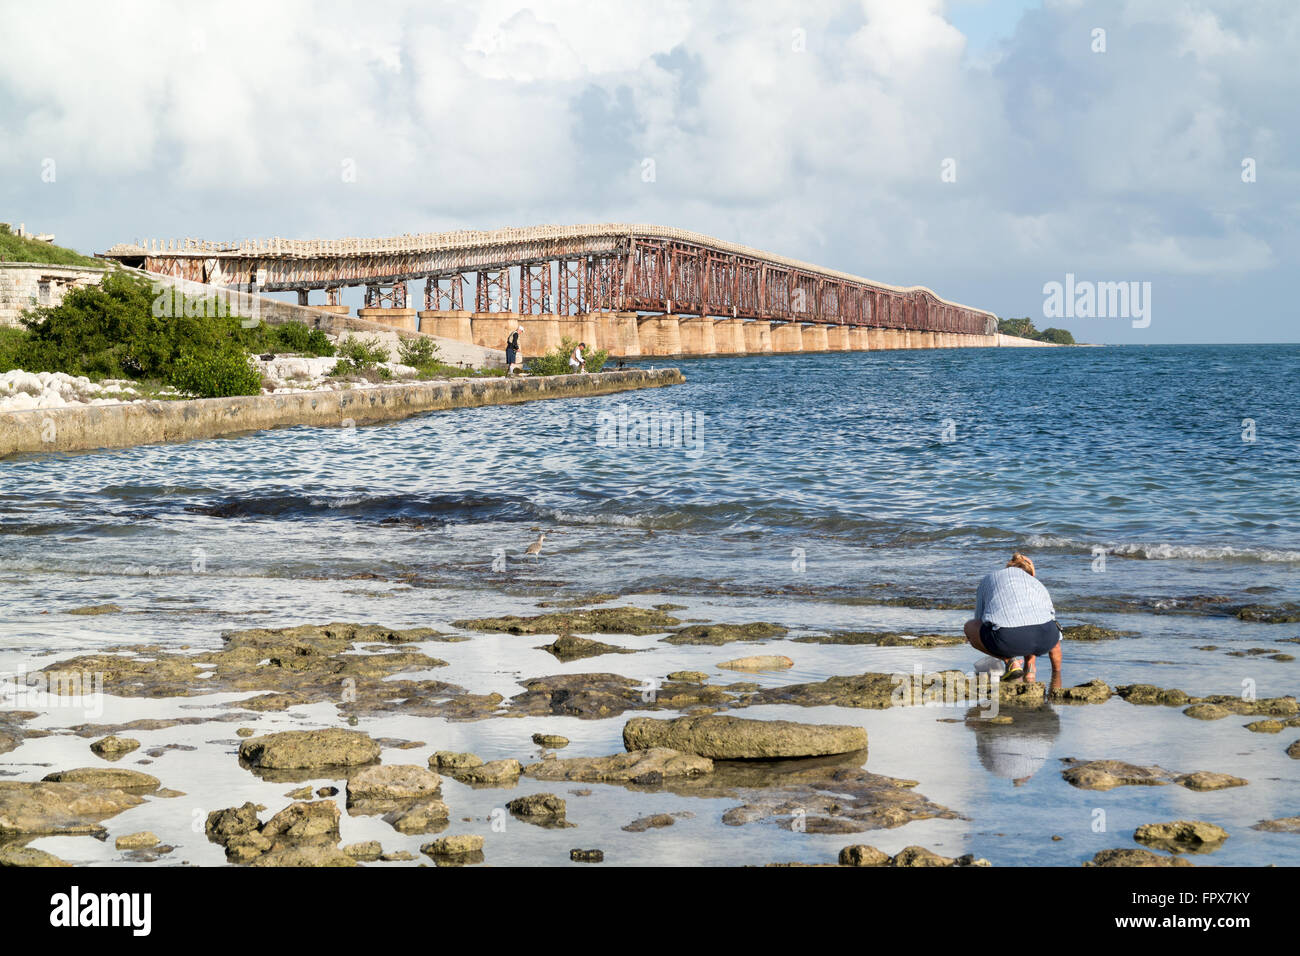 Vista del viejo puente ferroviario Ronda Bahia de puerto español clave, los Cayos de Florida, EE.UU. Foto de stock